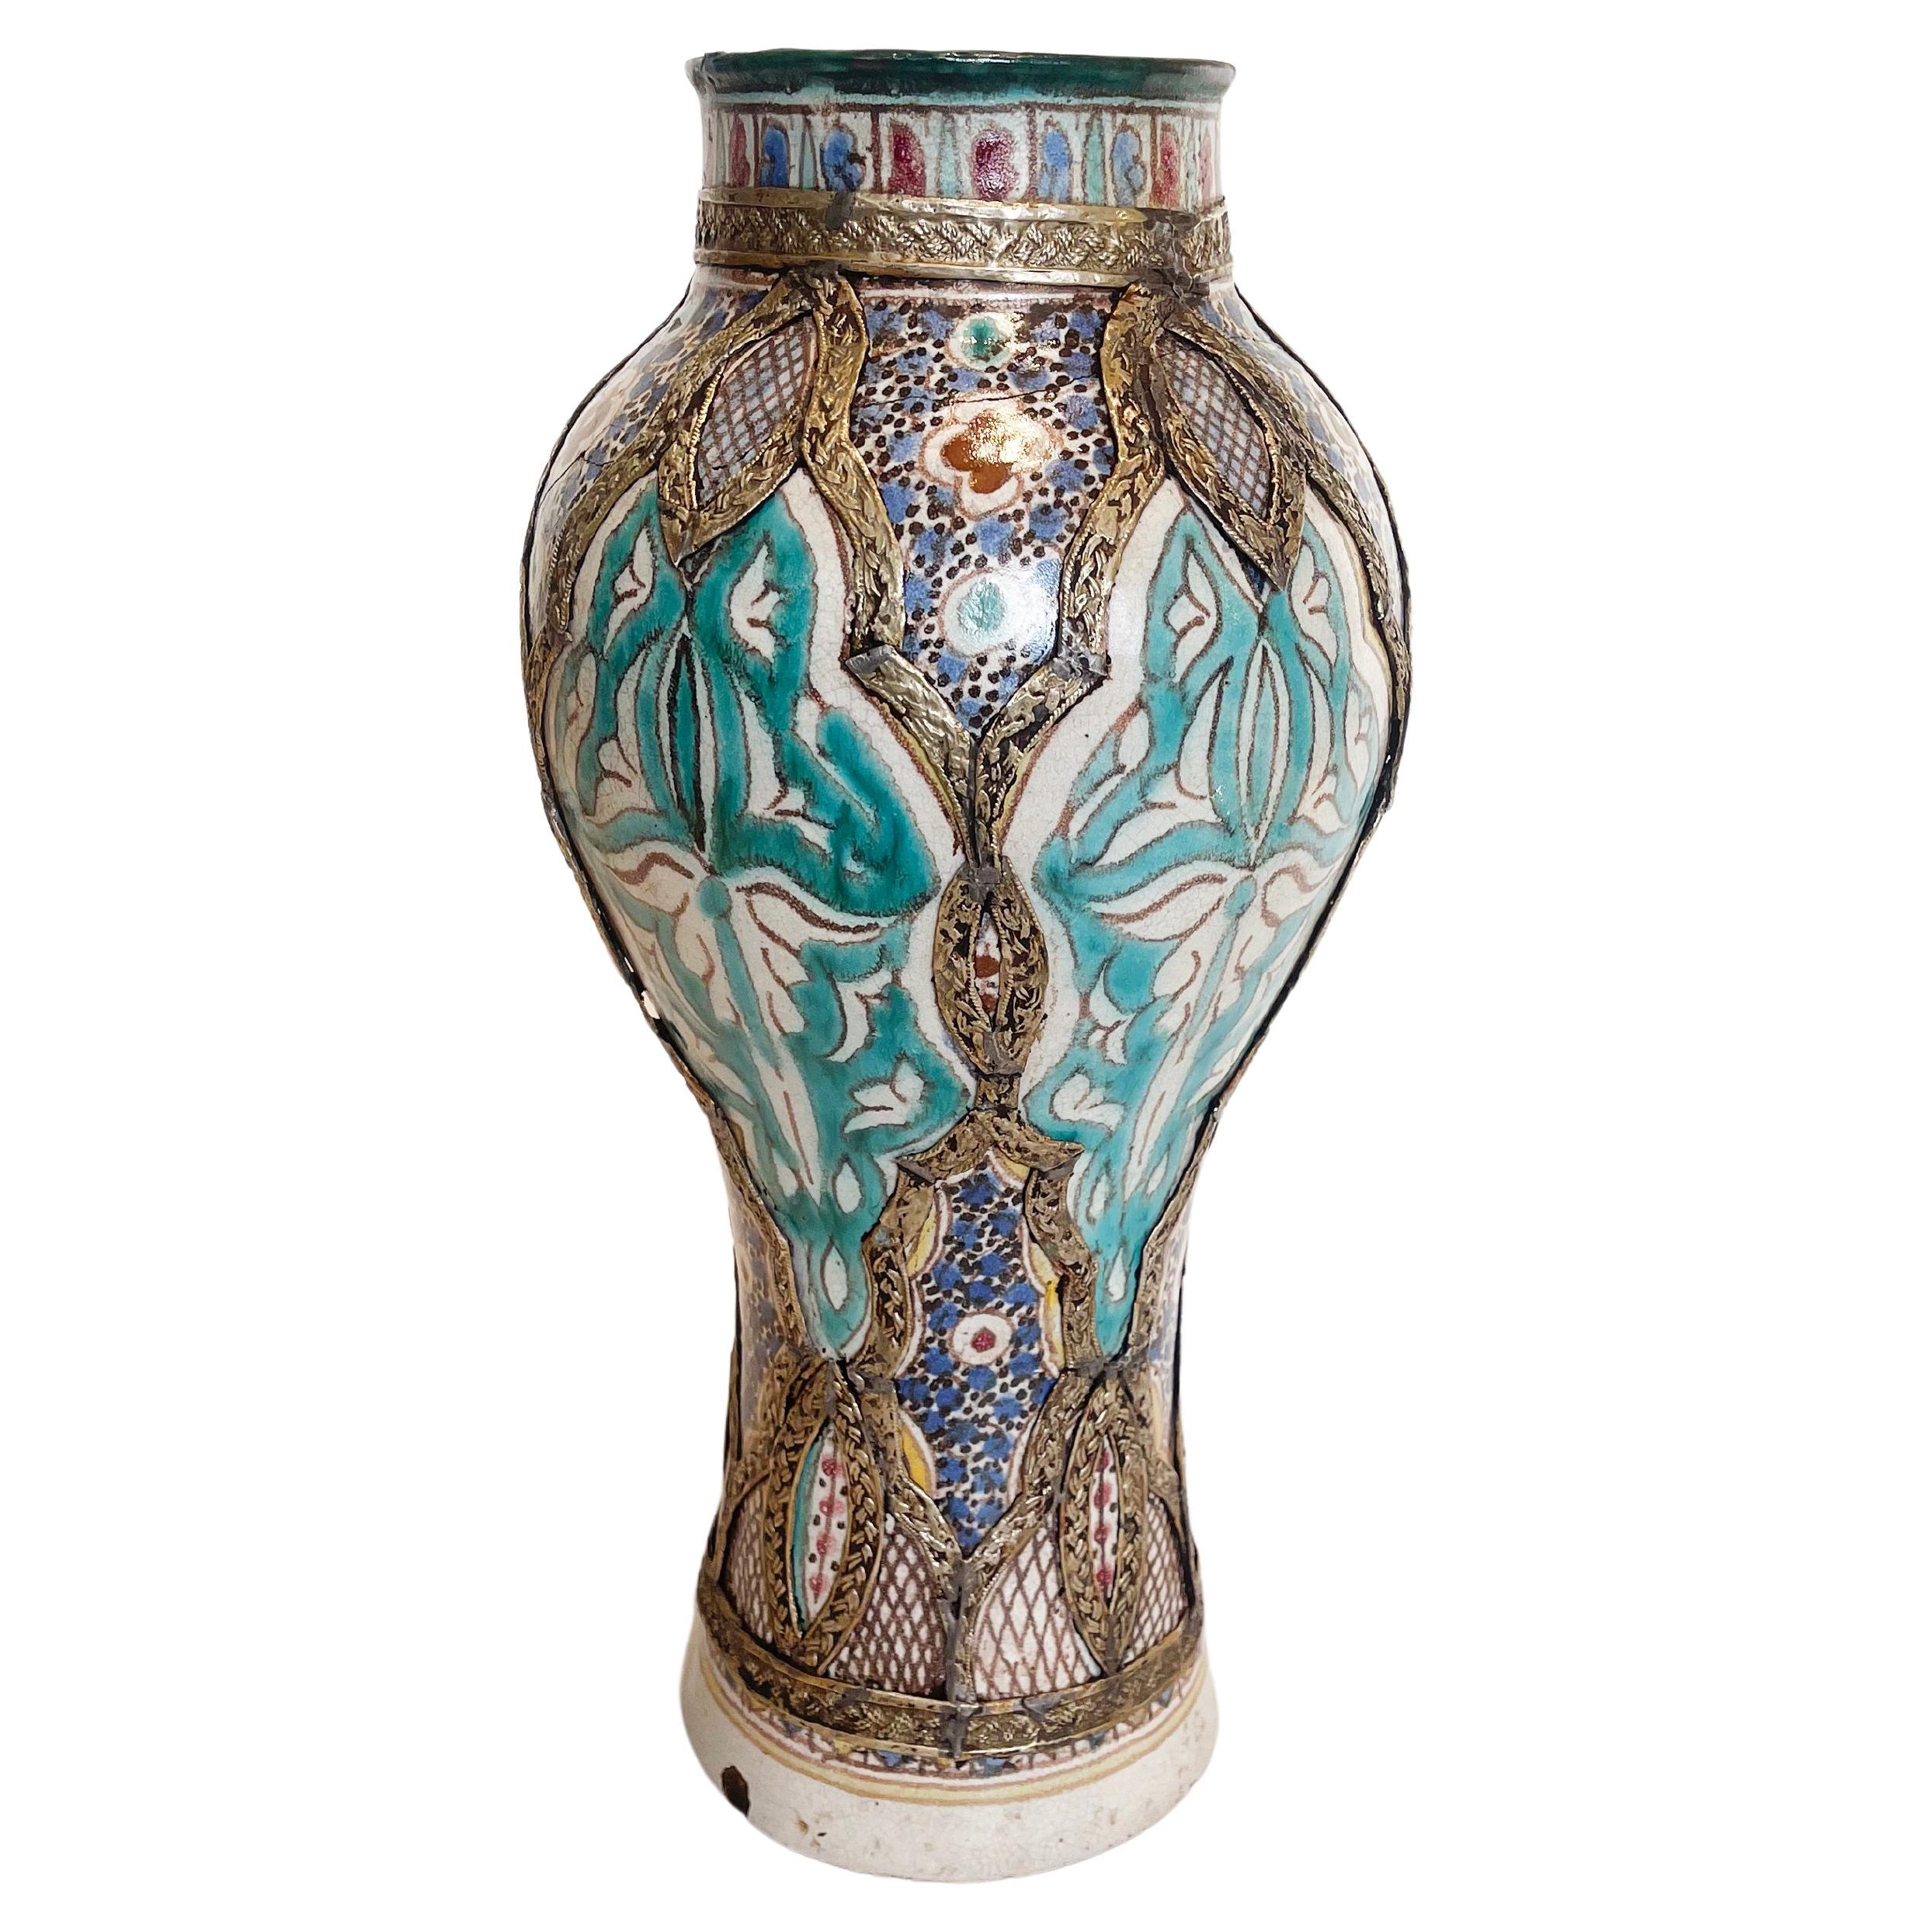 Fantastische Farbkombination mit eher ungewöhnlichem Nickel-Filigran-Dekor: schöne Vase aus Marokko.
Fes war und ist berühmt für seine hervorragende Handwerkskunst und sein künstlerisches Geschick.
Dieses Gefäß ist wunderschön handbemalt in einem